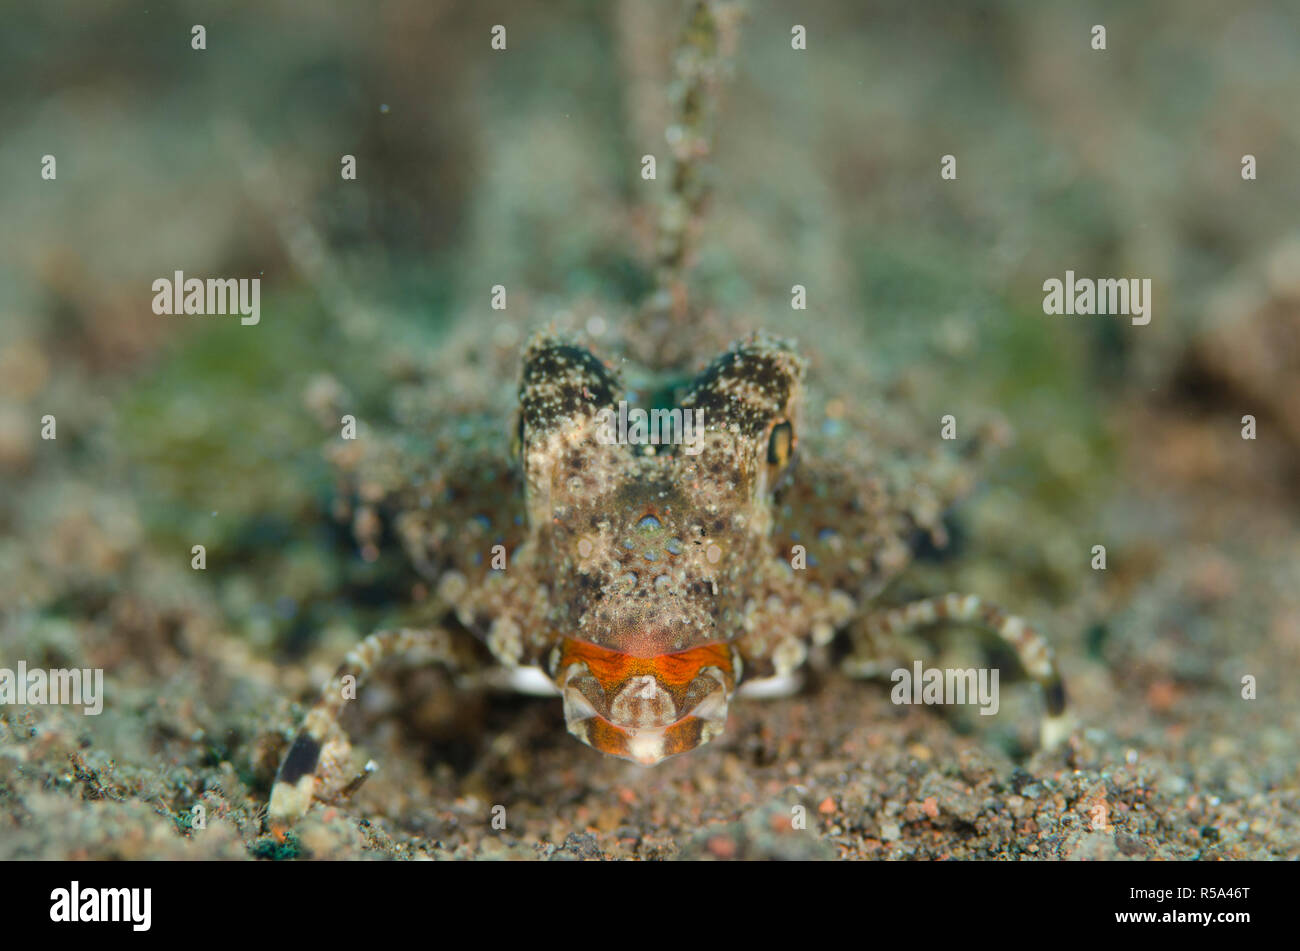 Dragonetto arancione e nero, Dactylopus kuiteri, vista testa a testa, su pinna di sabbia nera, sito di immersione Segara, Seraya, Bali, Indonesia, Oceano Indiano Foto Stock